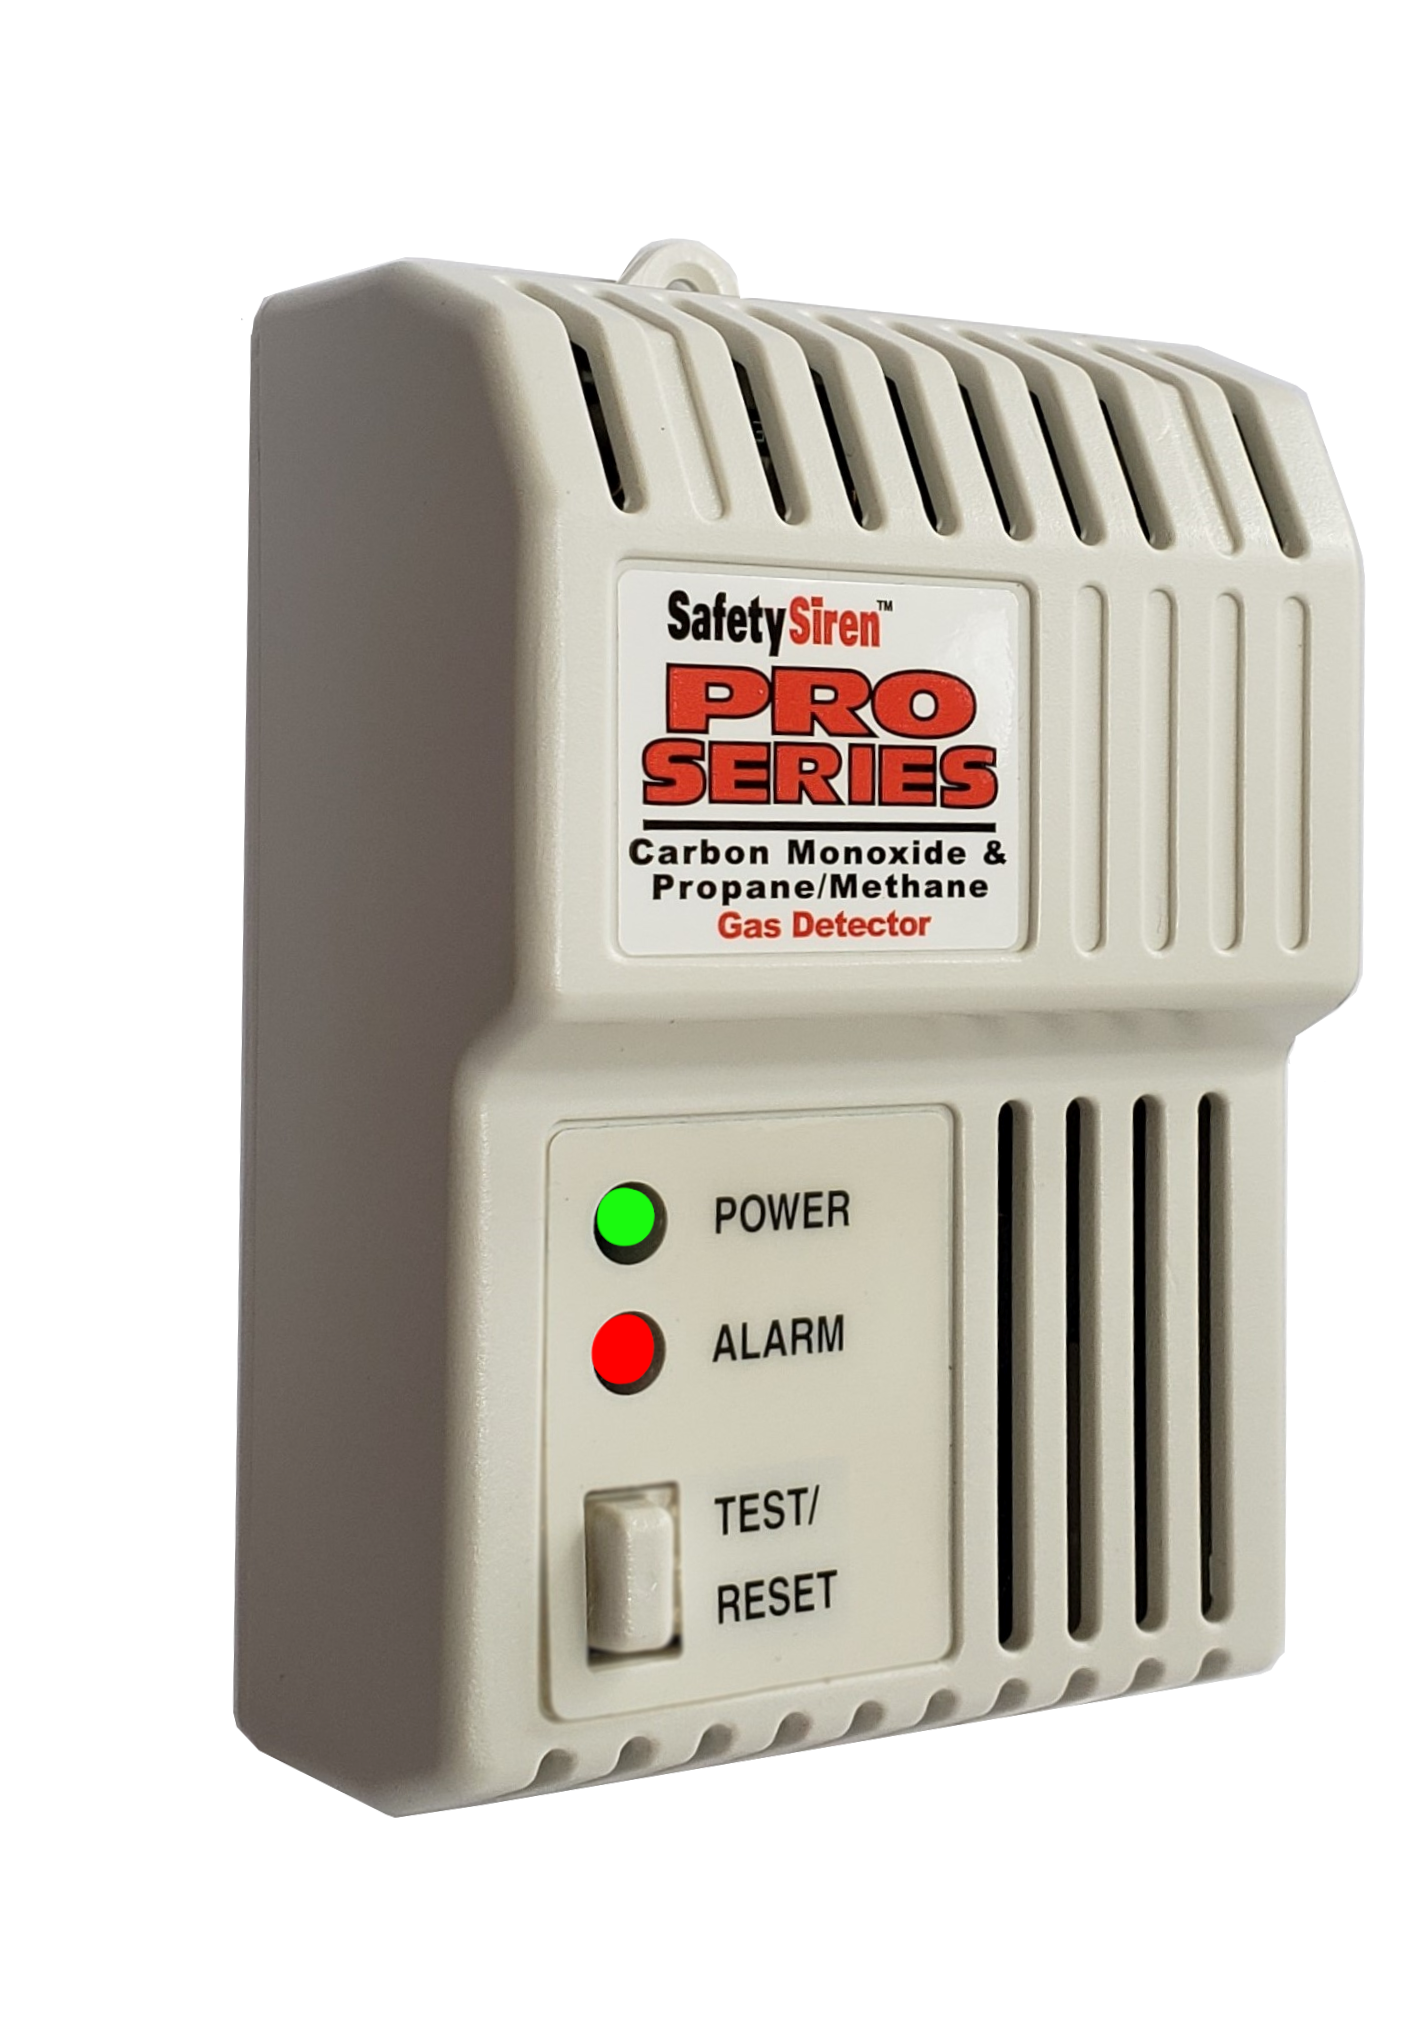 Safety Siren Pro Series 3 Radon Gas Tester Detector in Bq/m³ w/ 110-240v power 